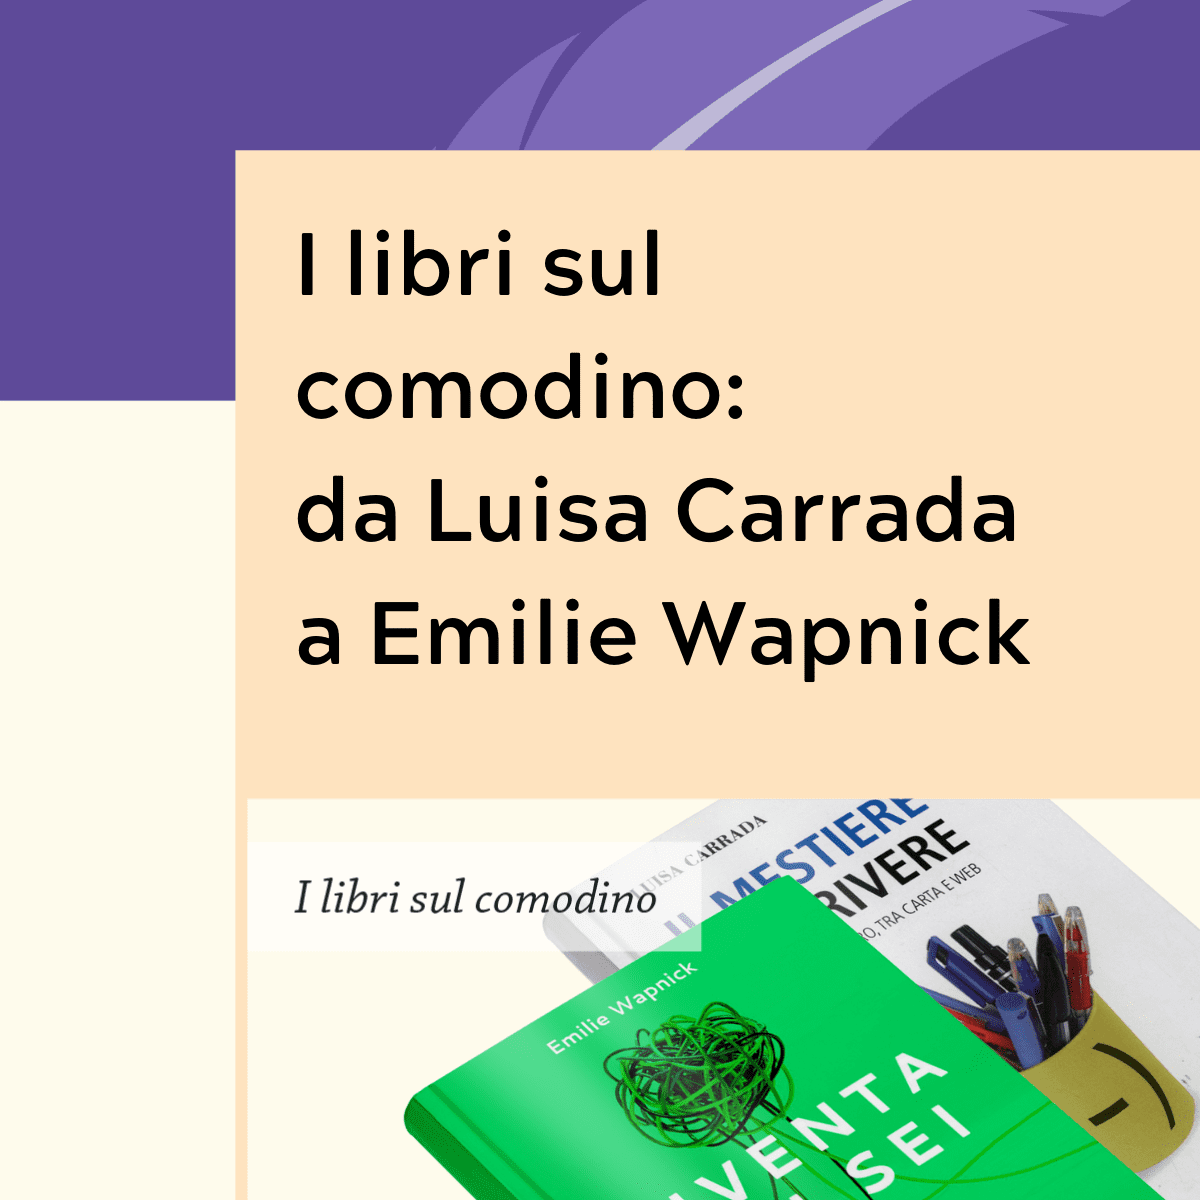 I libri sul comodino da Luisa Carrada a Emilie Wapnick